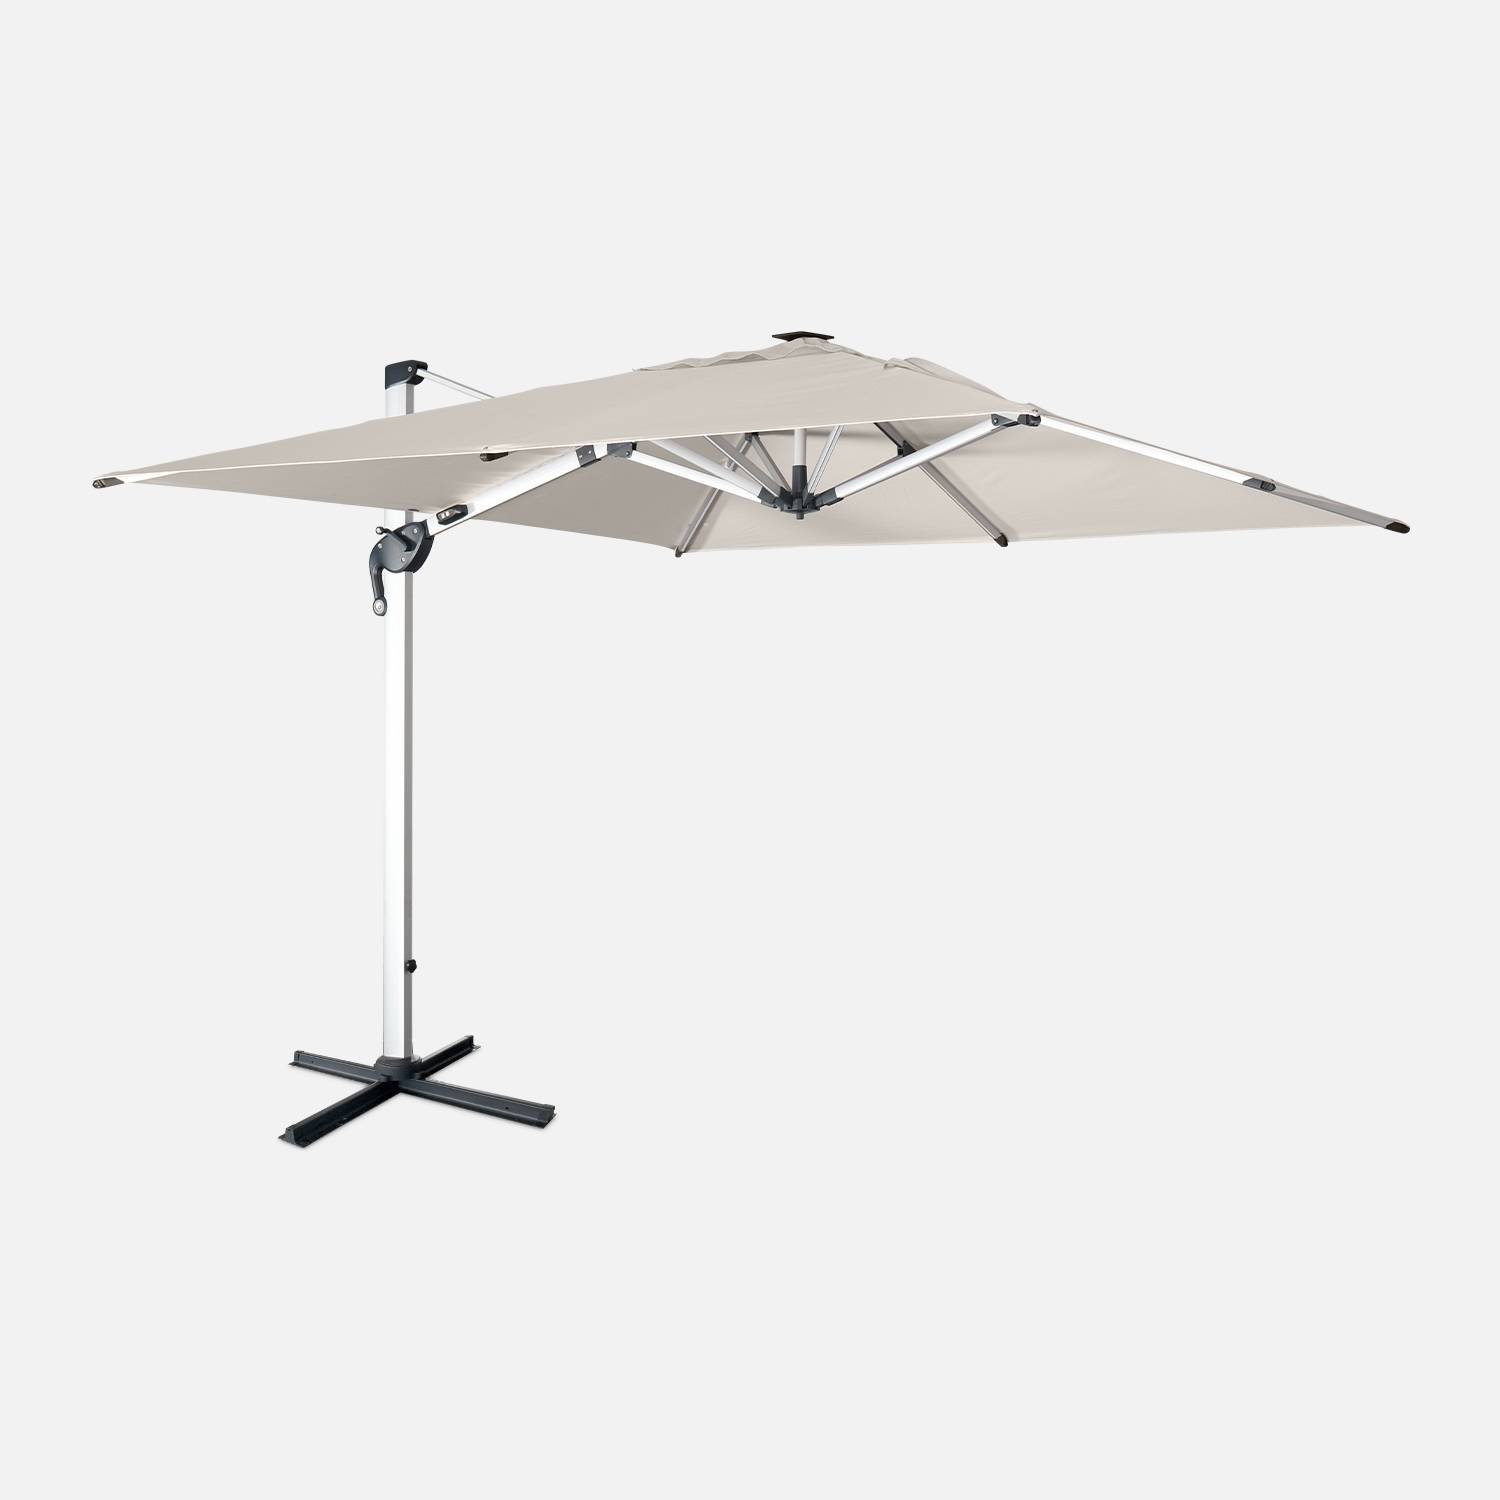 LED-Sonnenschirm 3x3m, hochwertig - PYLA LED beige - Sunbrella-Gewebe, Struktur aus Alu, LED-Beleuchtung, Schutzhülle | sweeek